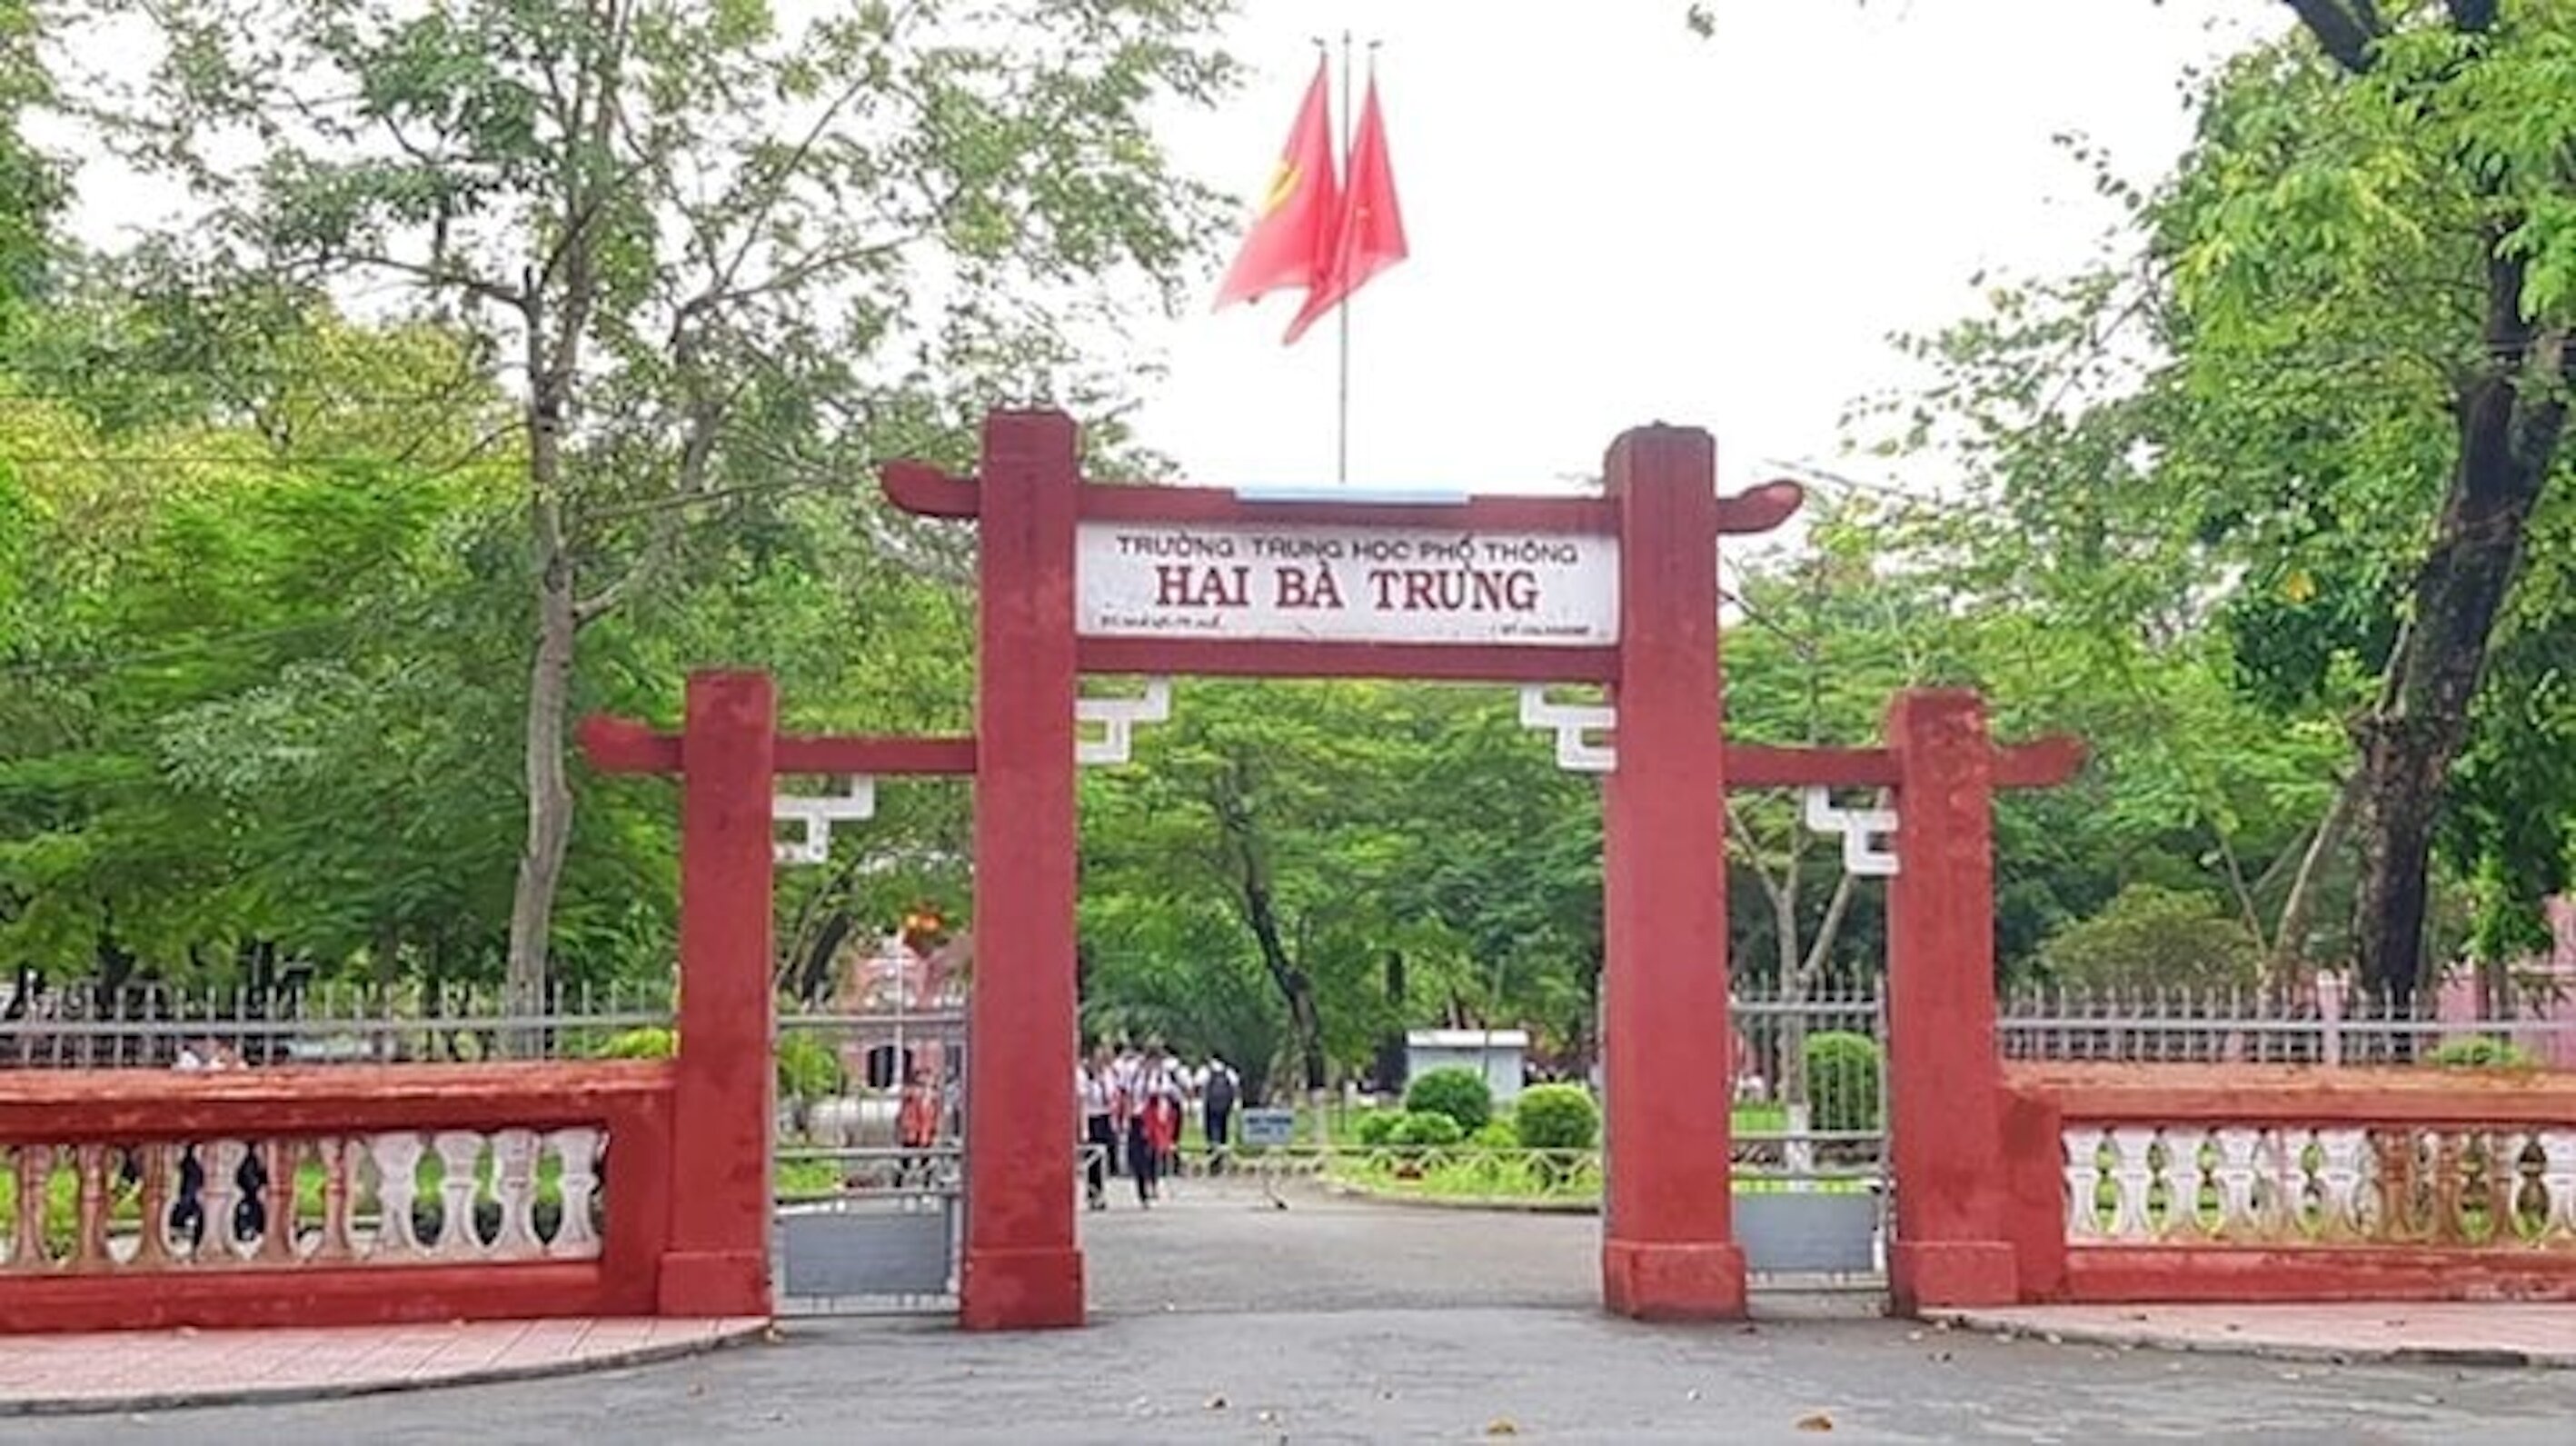 Trường THPT Hai Bà Trưng là ngôi trường có bề dày truyền thống ở Thừa Thiên - Huế